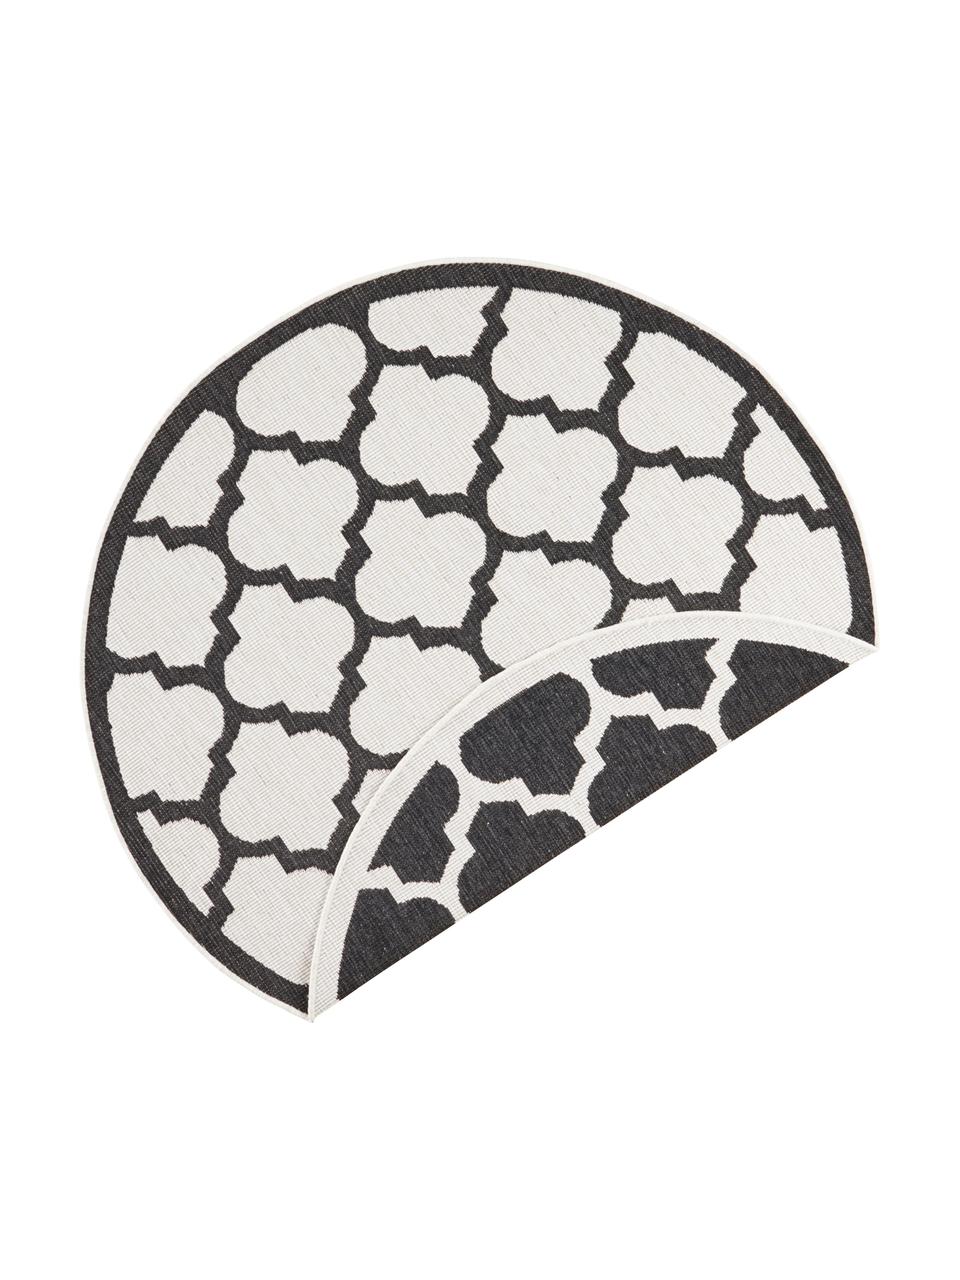 Okrągły dwustronny dywan wewnętrzny/zewnętrzny Palermo, Czarny, kremowy, Ø 200 cm (Rozmiar L)